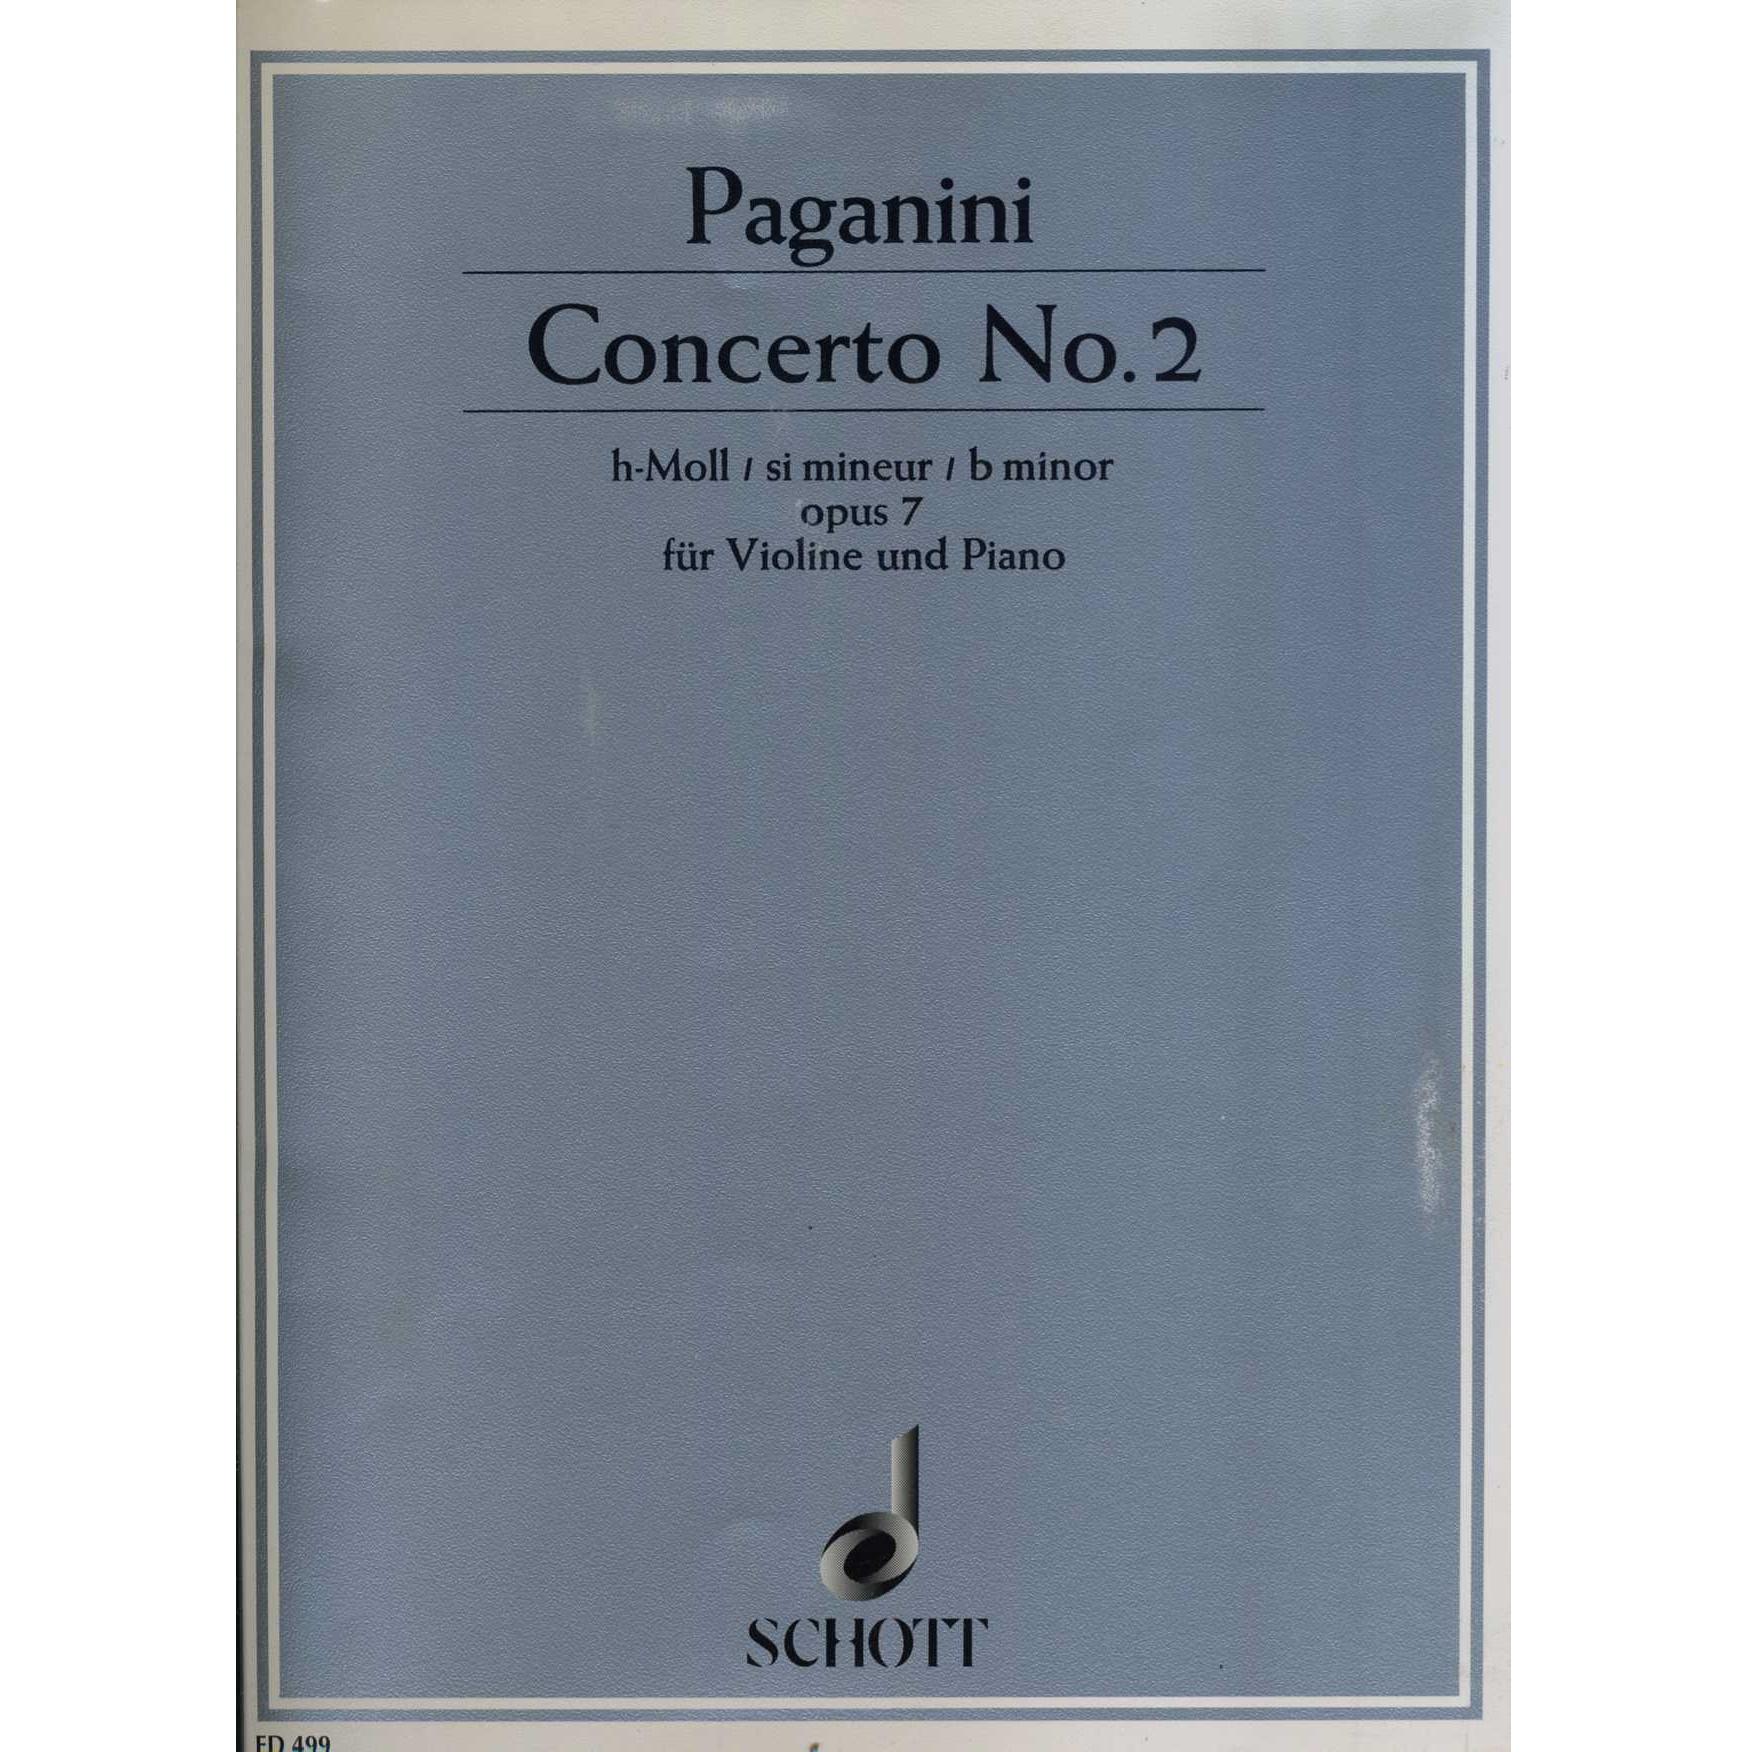 Paganini Concerto No. 2 B minor opus 7 fur Violine und Piano - Schott